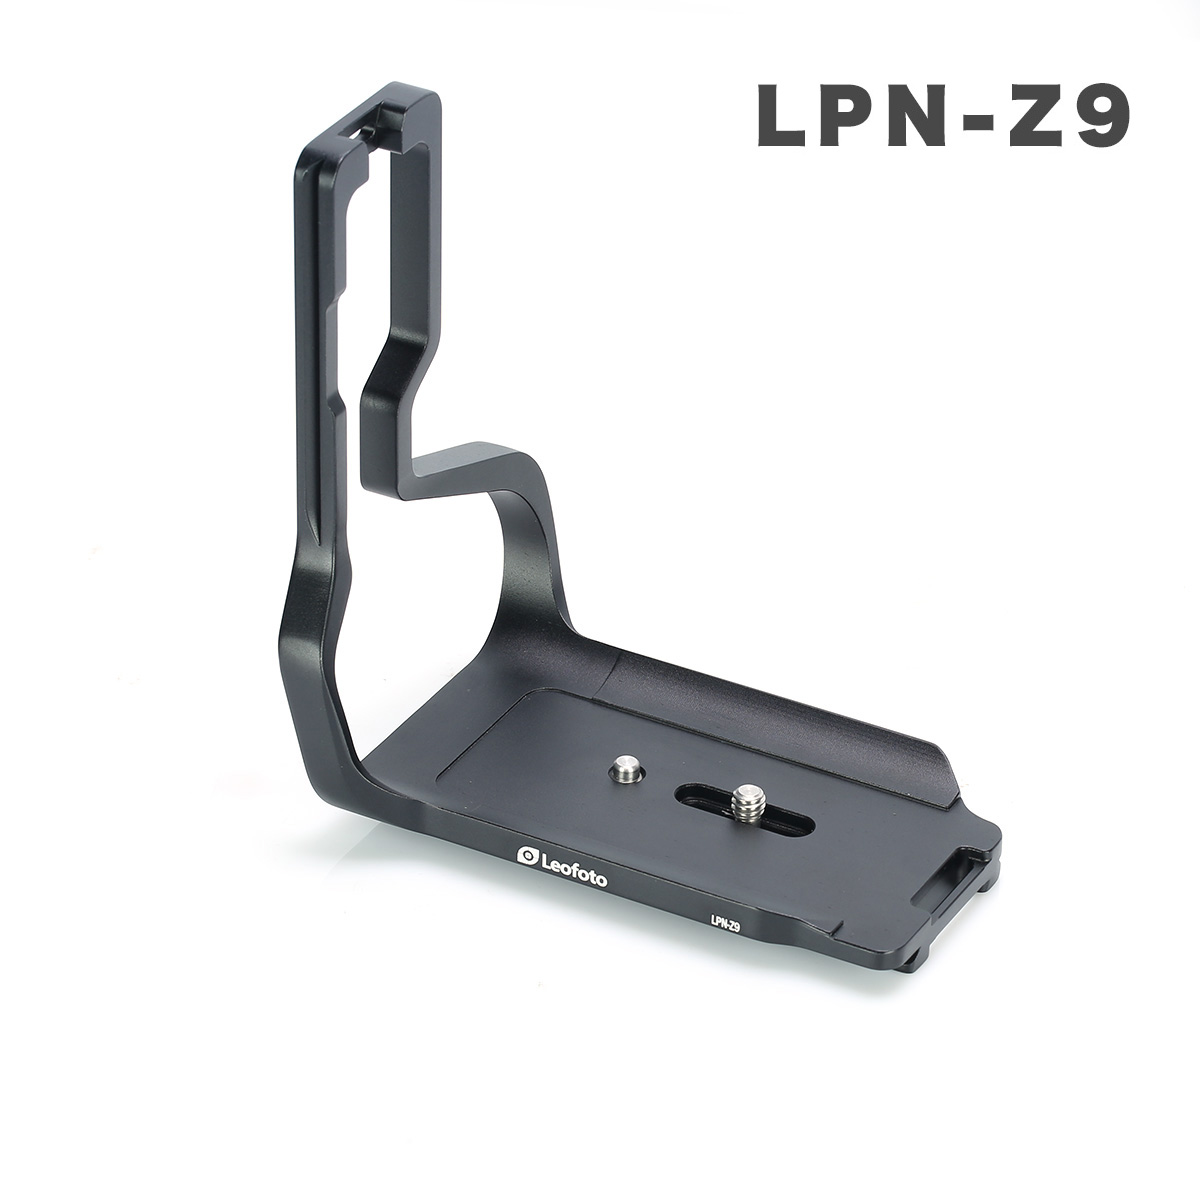 LPN-Z9s